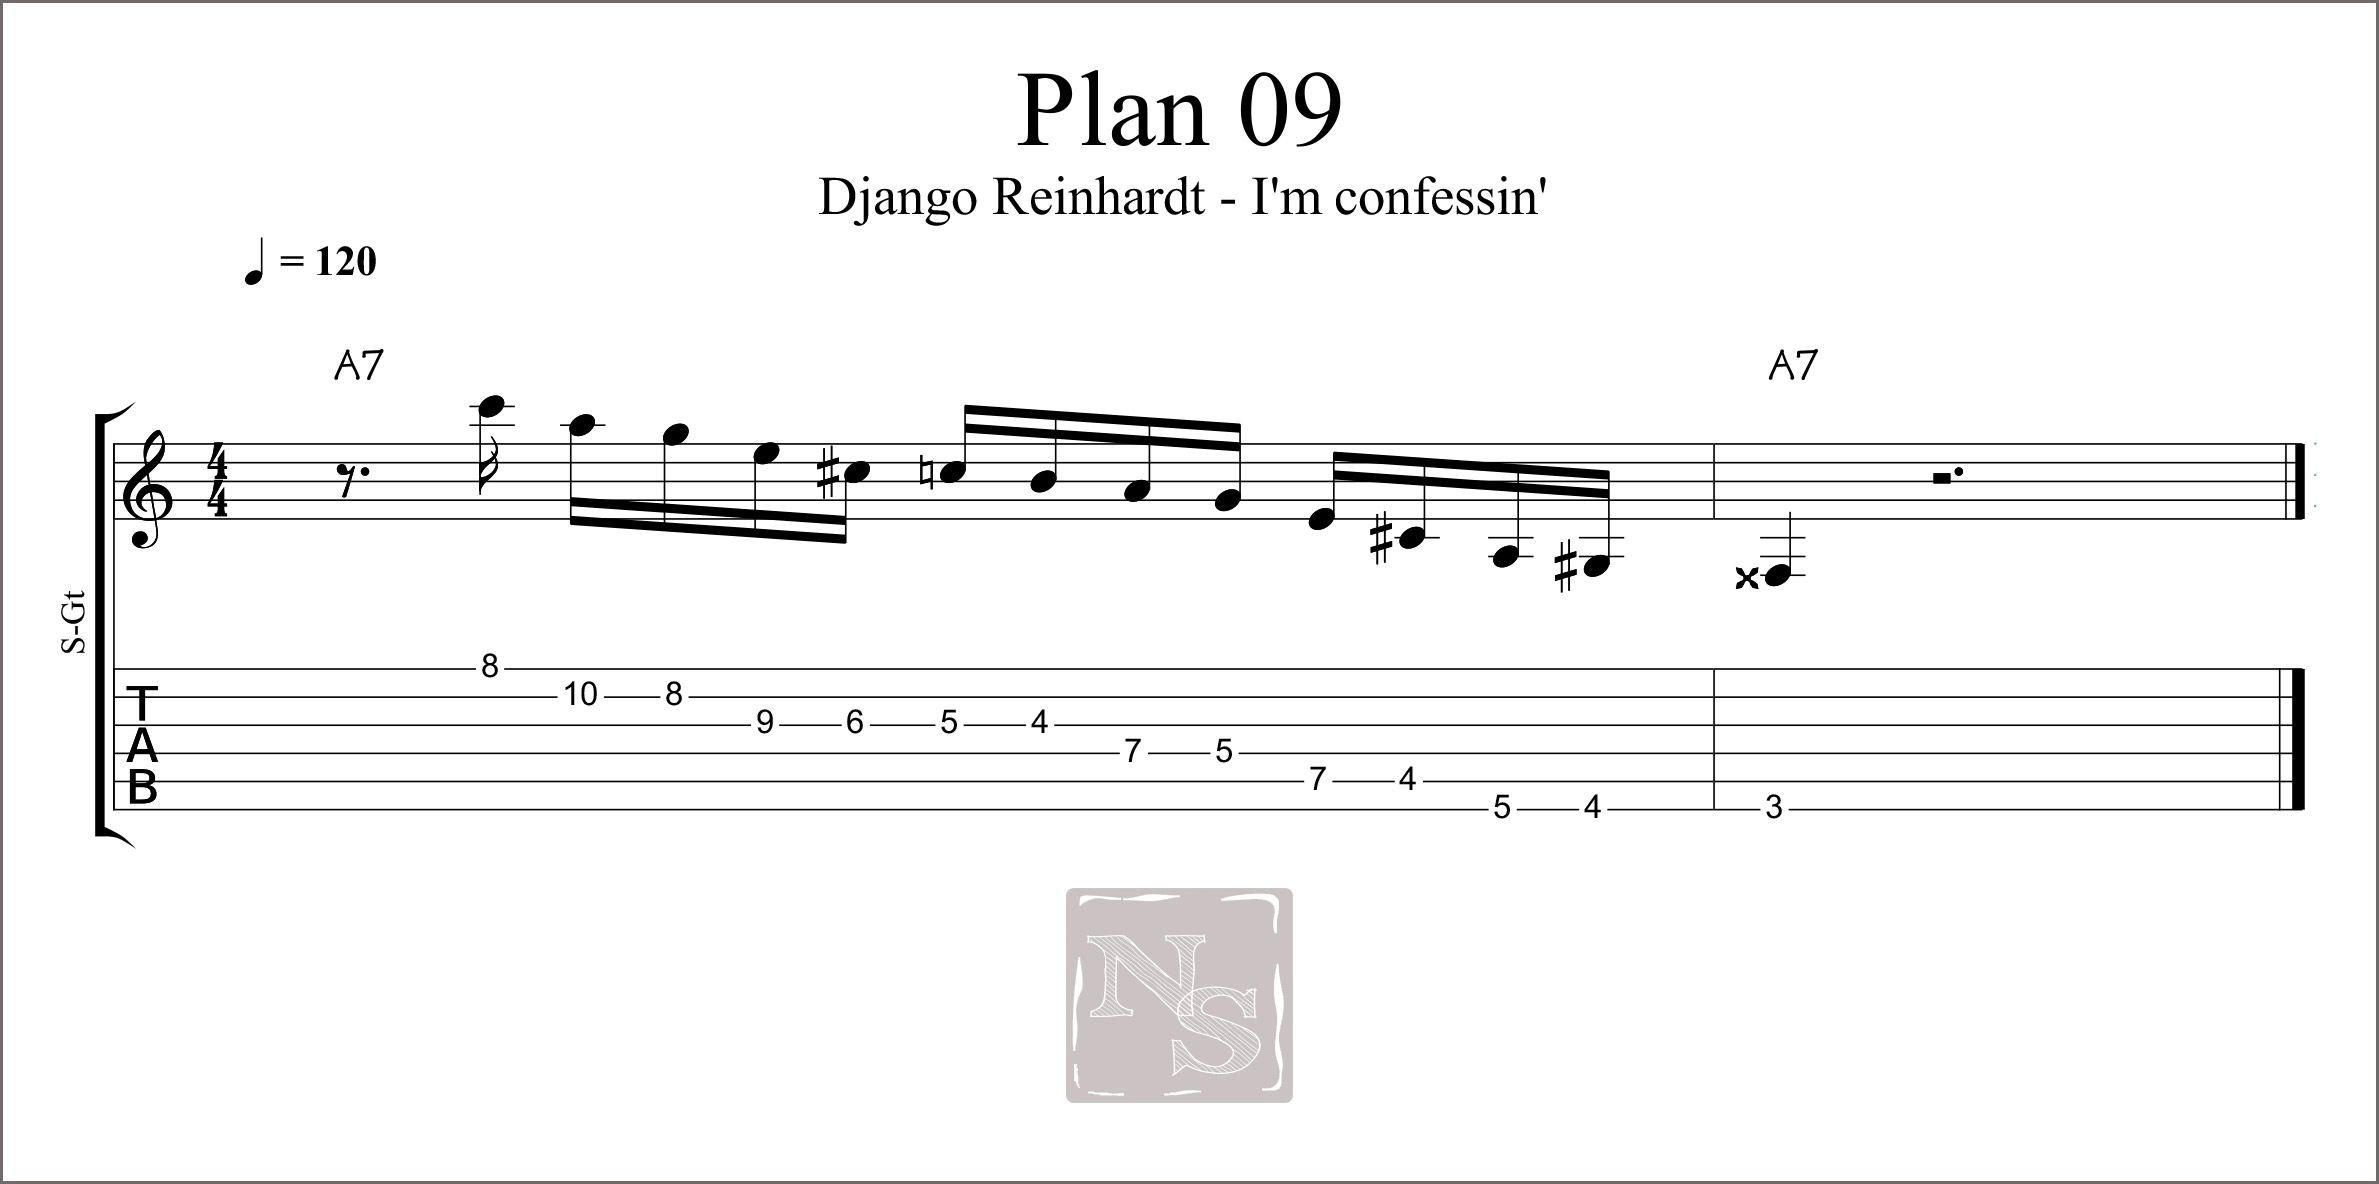 Plan 09 